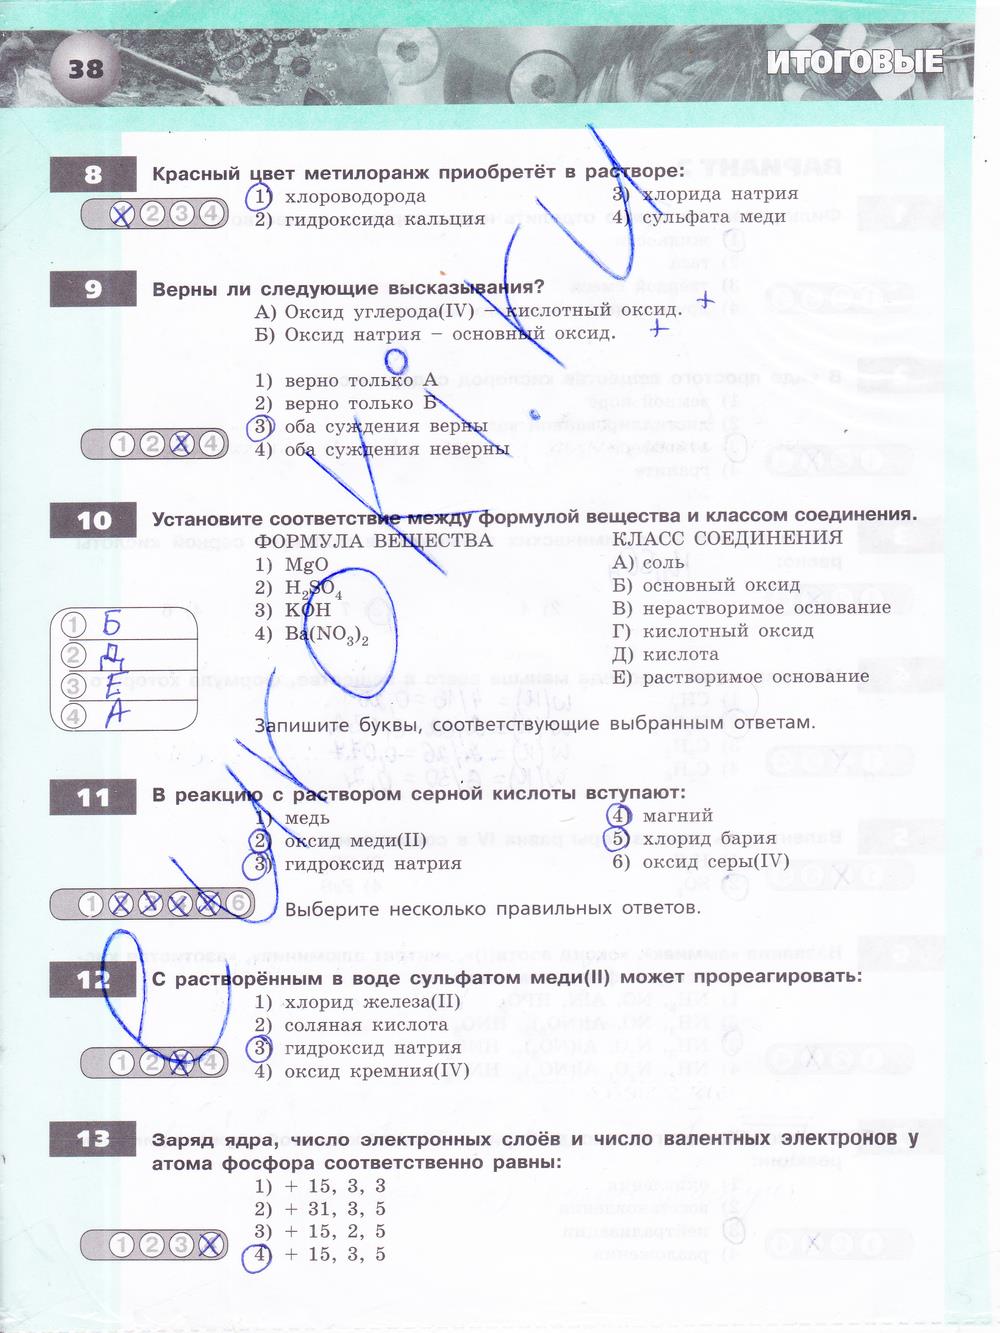 гдз 8 класс тетрадь-экзаменатор страница 38 химия Бобылева, Бирюлина